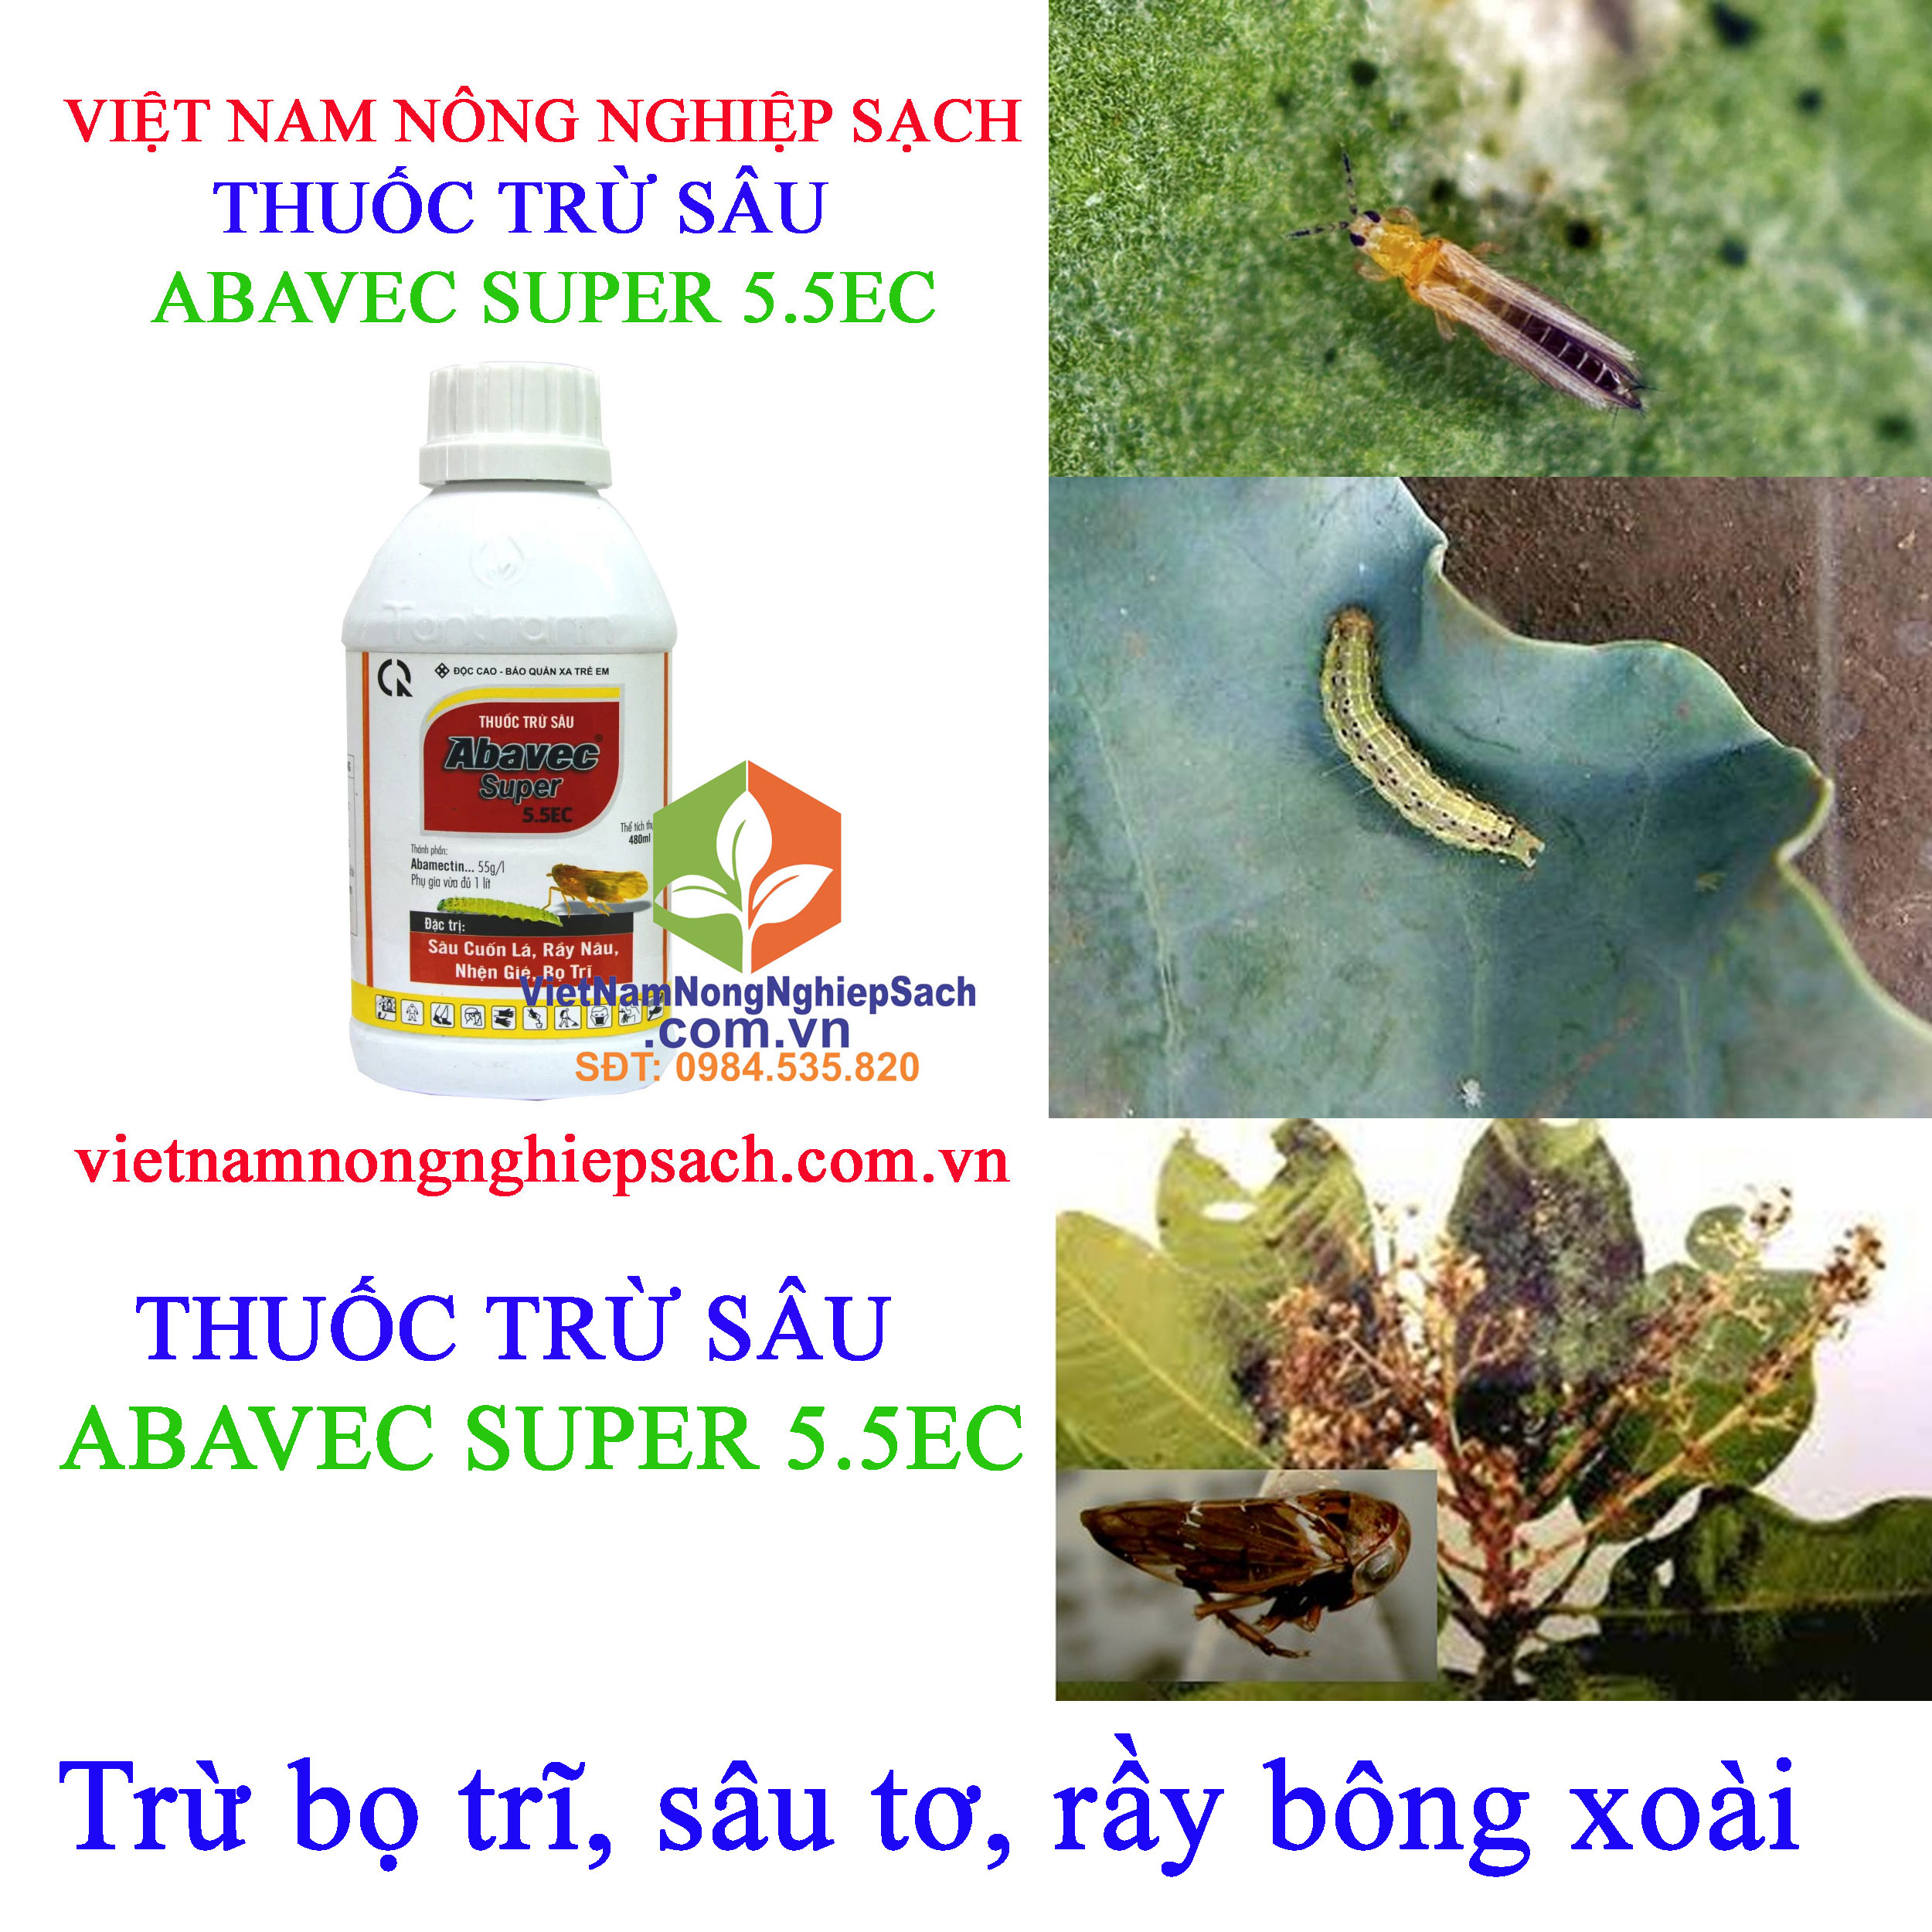 ABAVEC-SUPER-5.5EC-bọ-trĩ